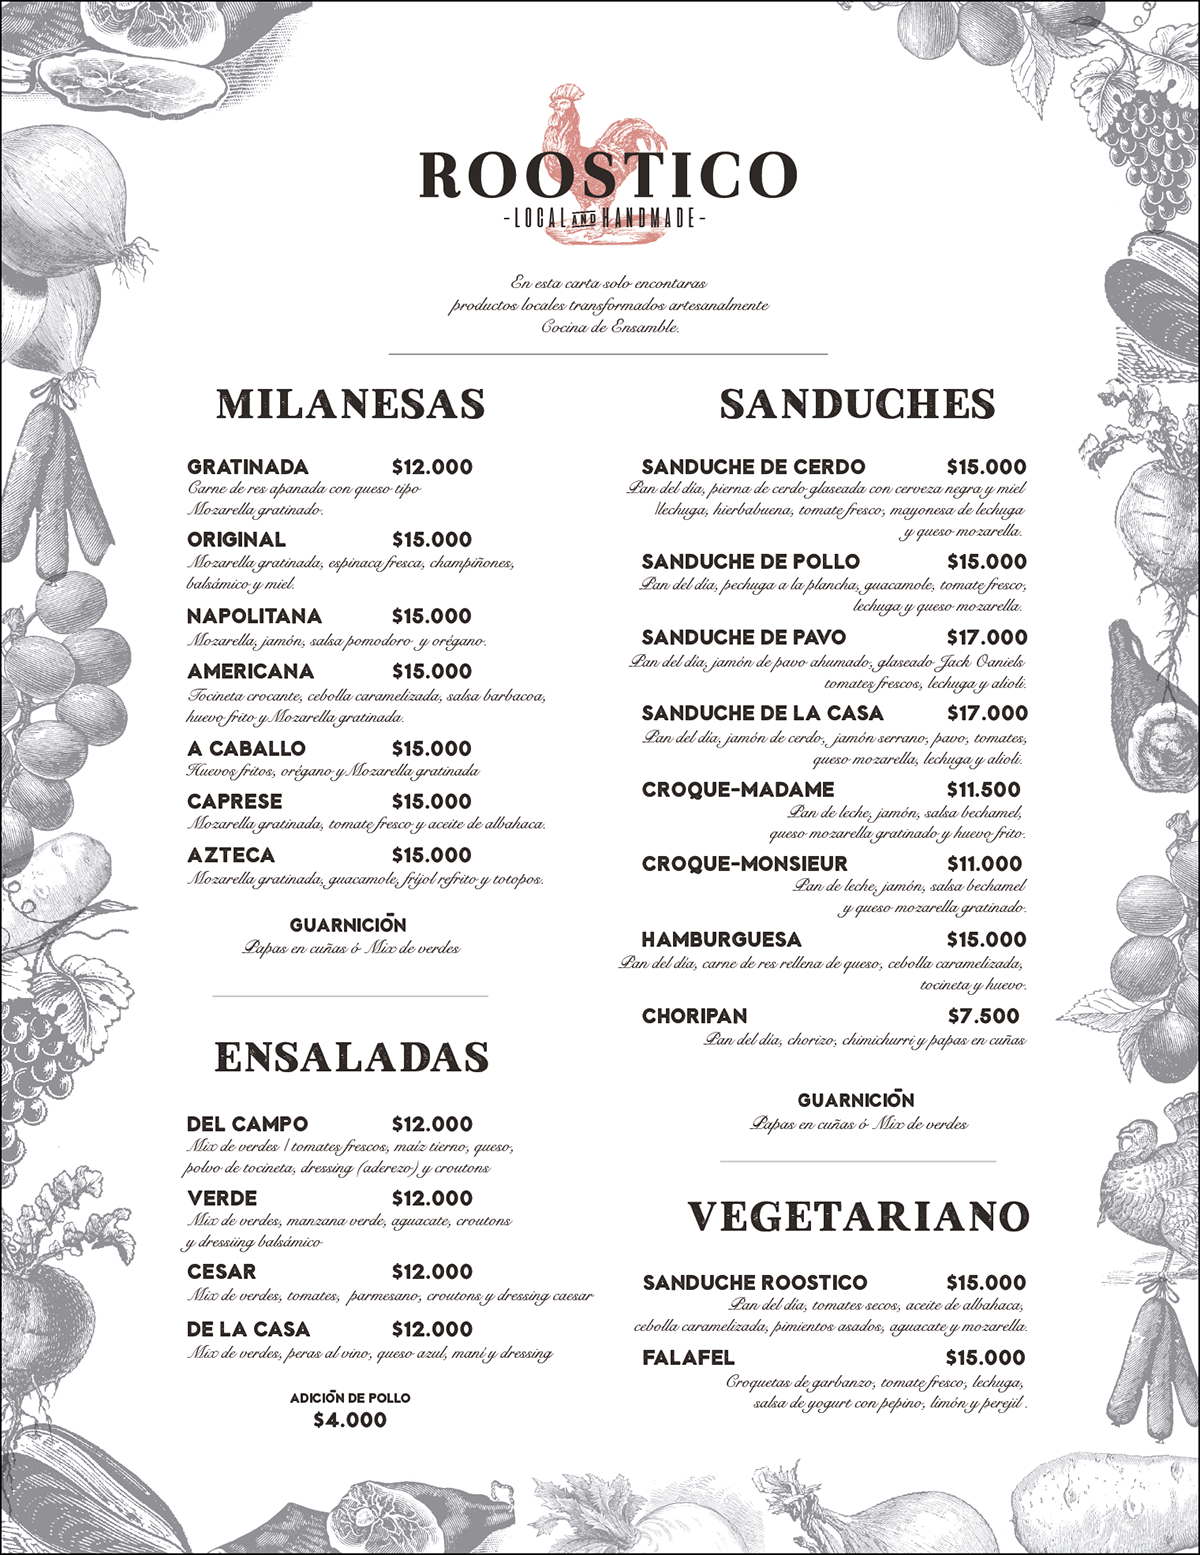 restaurant logo delicatessen Roostico Rooster brand sandwich